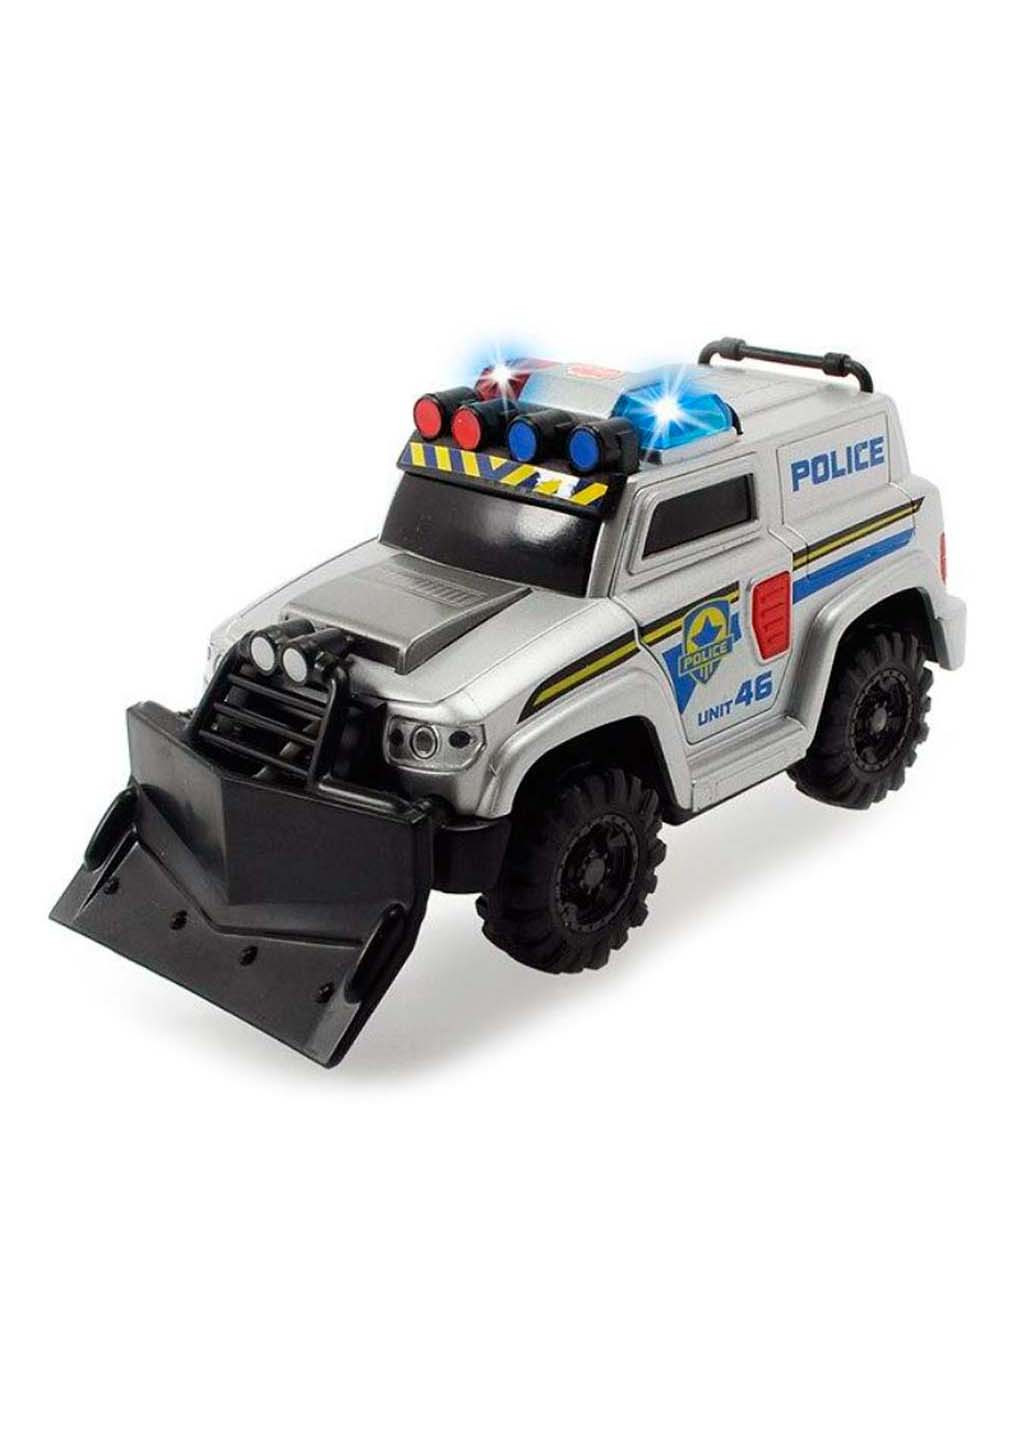 Іграшкова машинка поліції зі щитом 15 см Dickie toys (258842767)